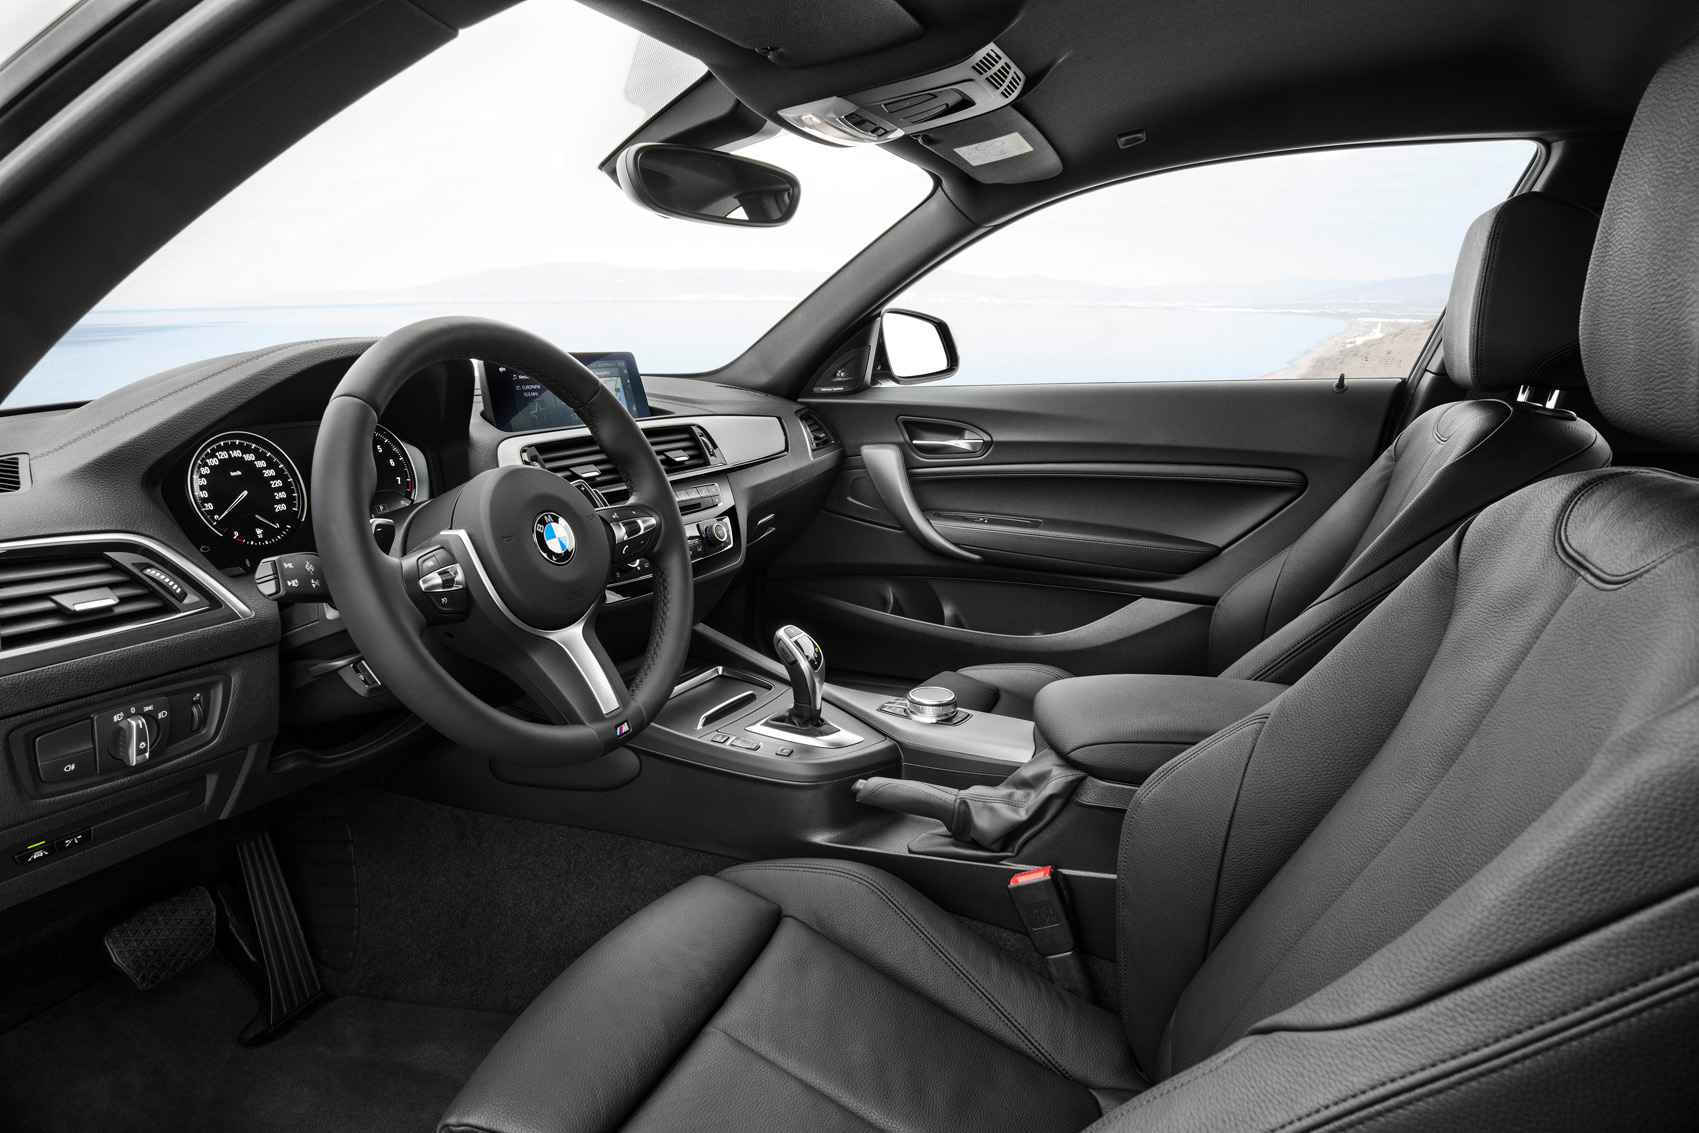 BMW 2 Series Coupé interior